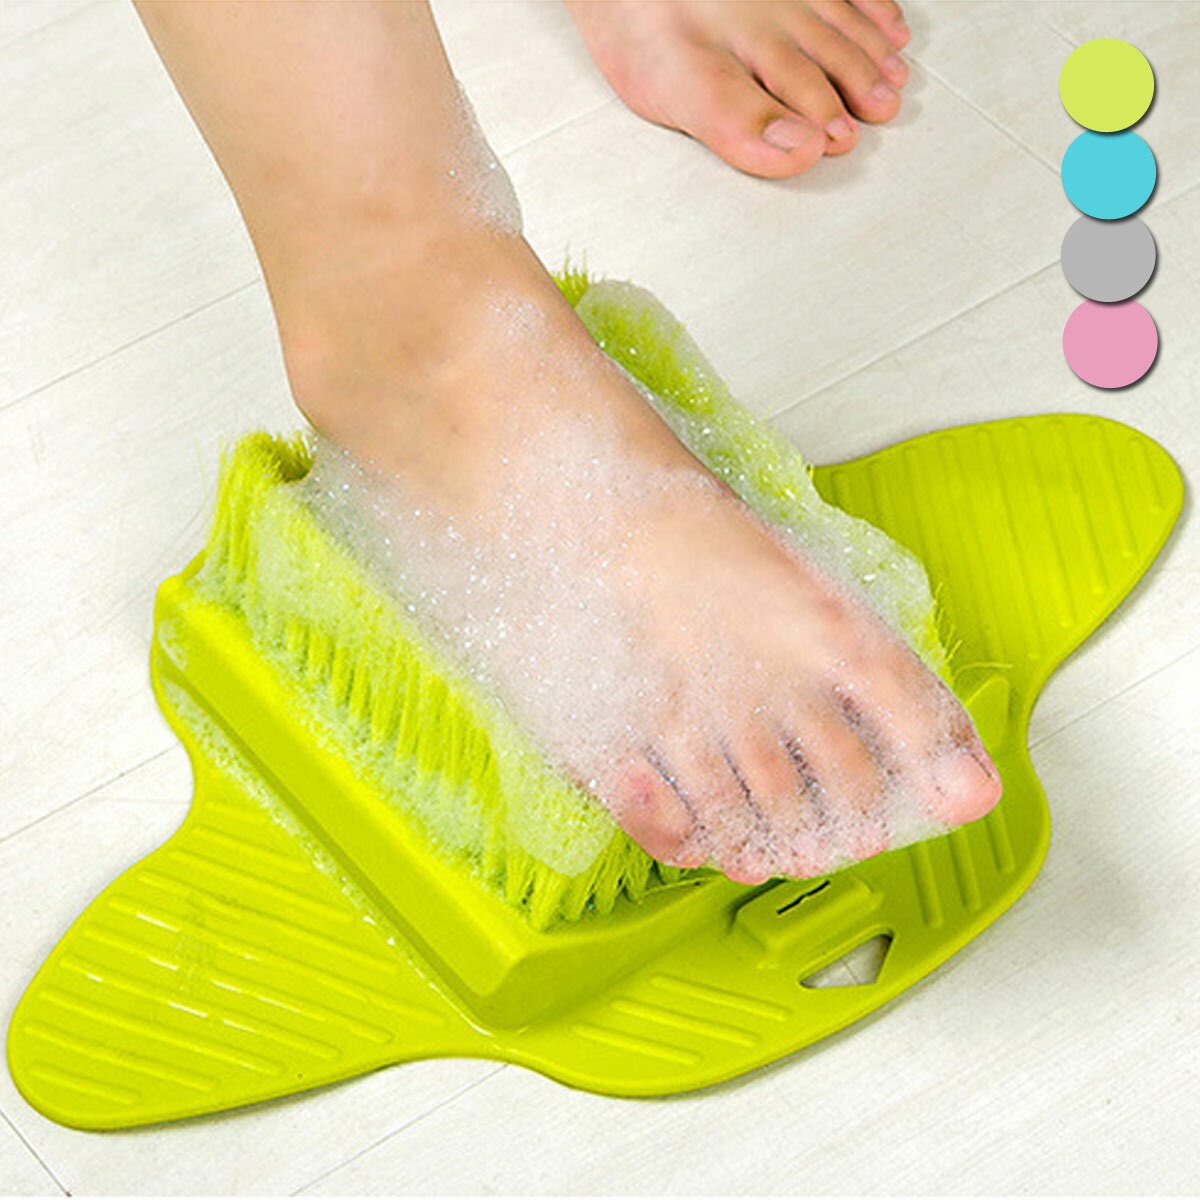 

Bath Foot Cleaner Scrub Brush Bath Shower ToolExfoliating Feet Scrubber Bath Cleaning Tool, Blue;green;grey